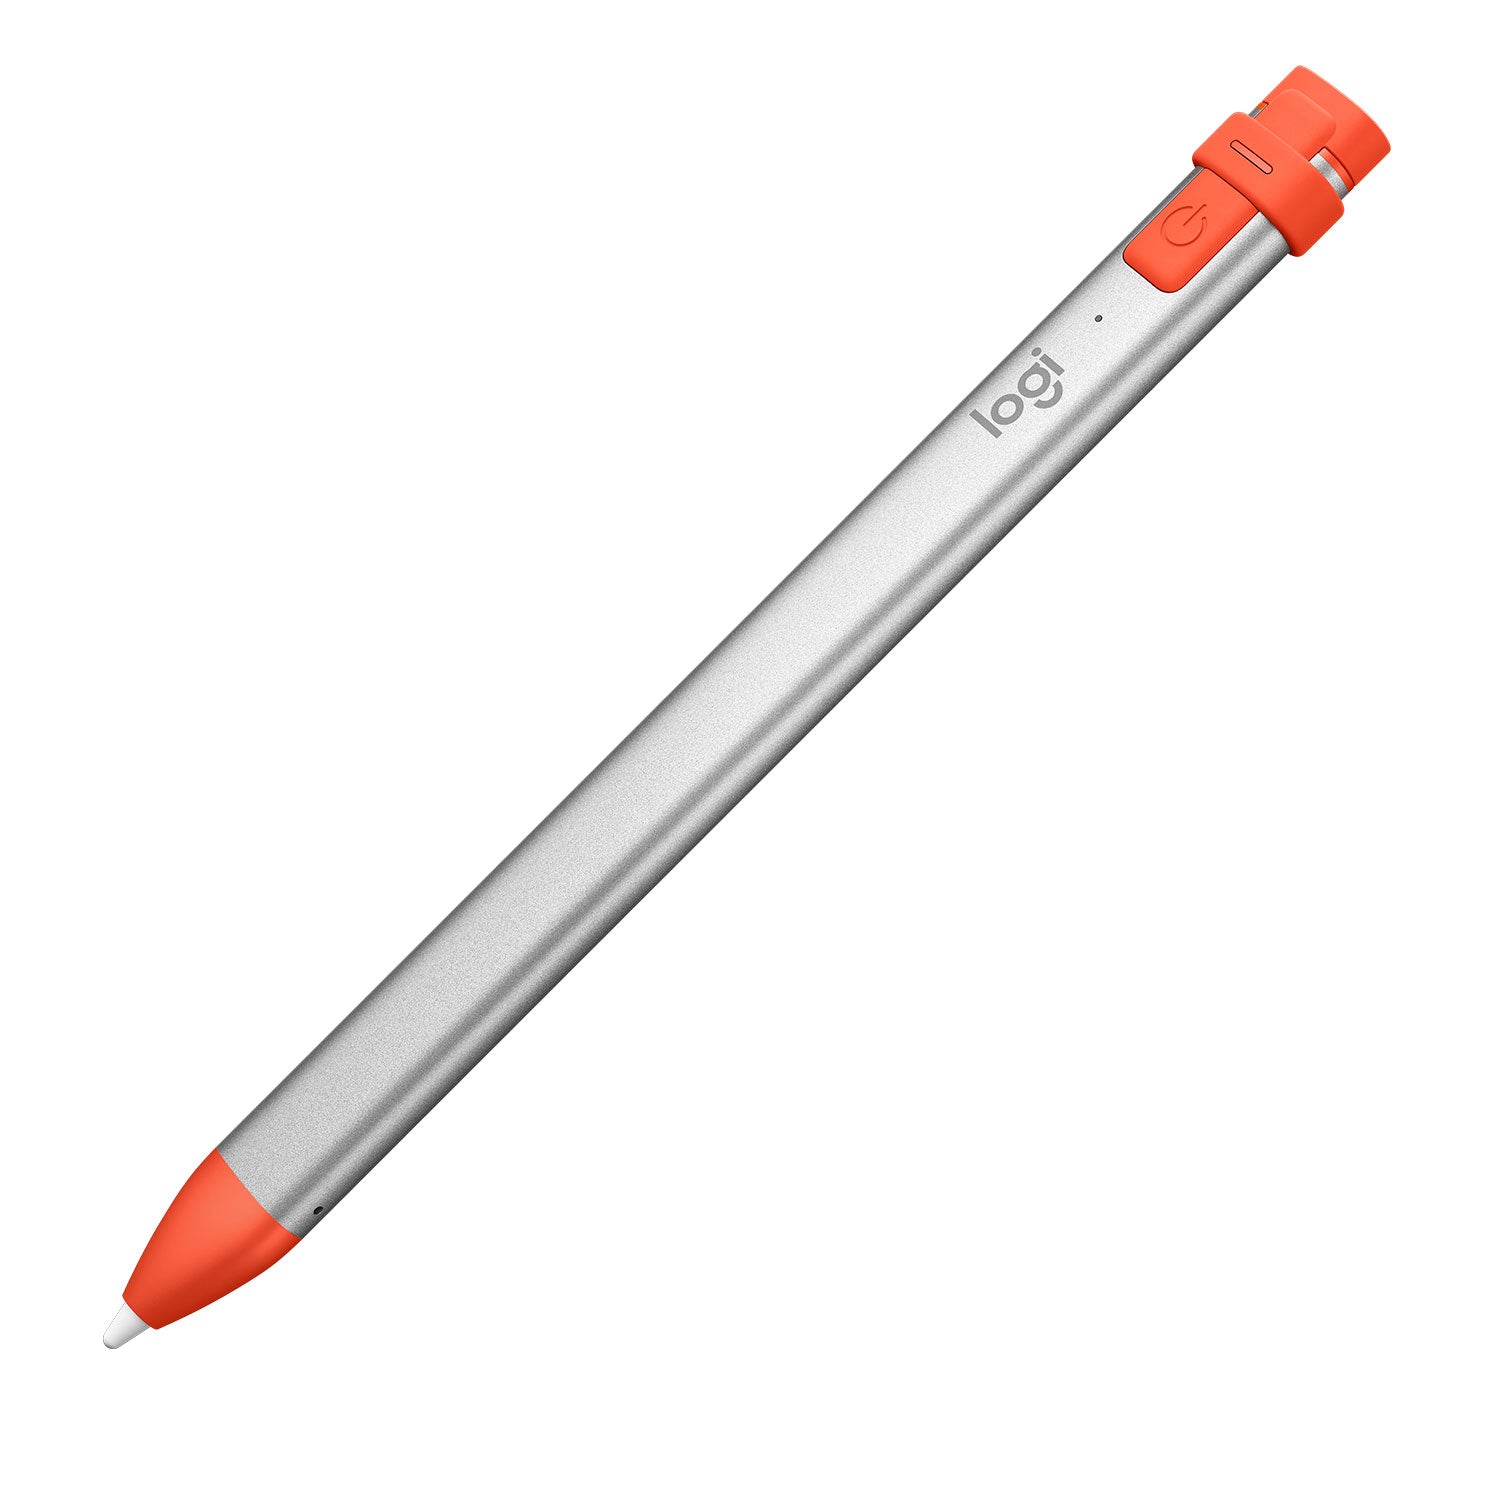 Logitech Crayon Stylus Pen 20 G Orange, Silver-(914-000046)